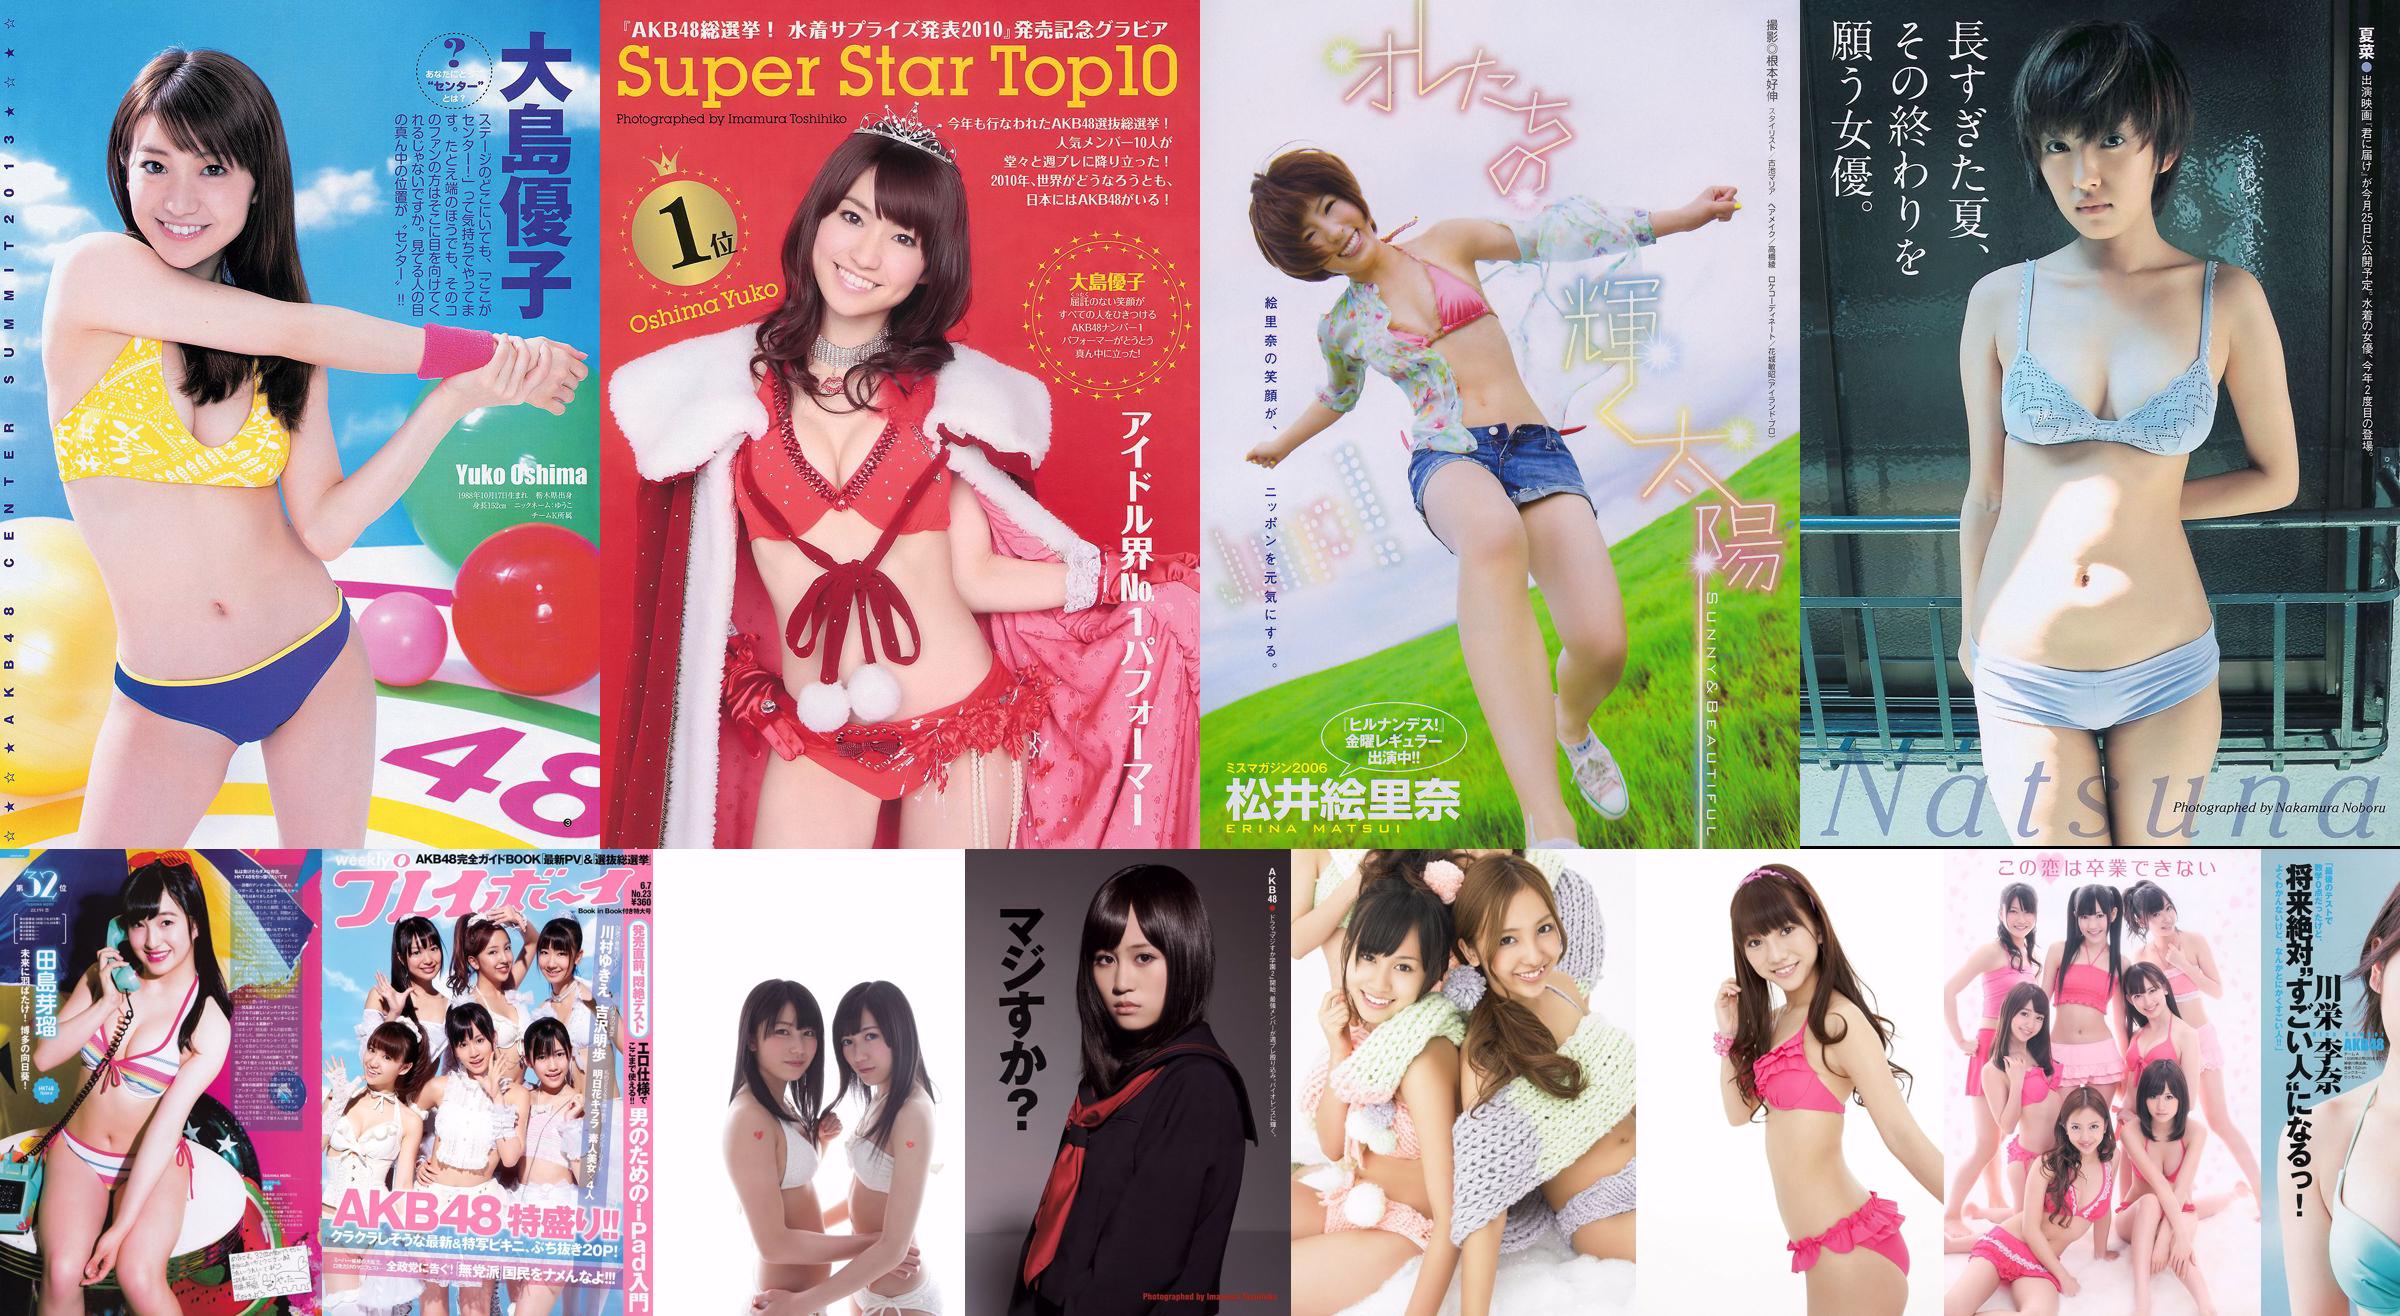 AKB48 Mikiho Niwa Rika Adachi Minami Tanaka Kazue Fukiishi Risa Yoshiki [Playboy settimanale] 2011 No.34-35 Fotografia No.cdf7e0 Pagina 4